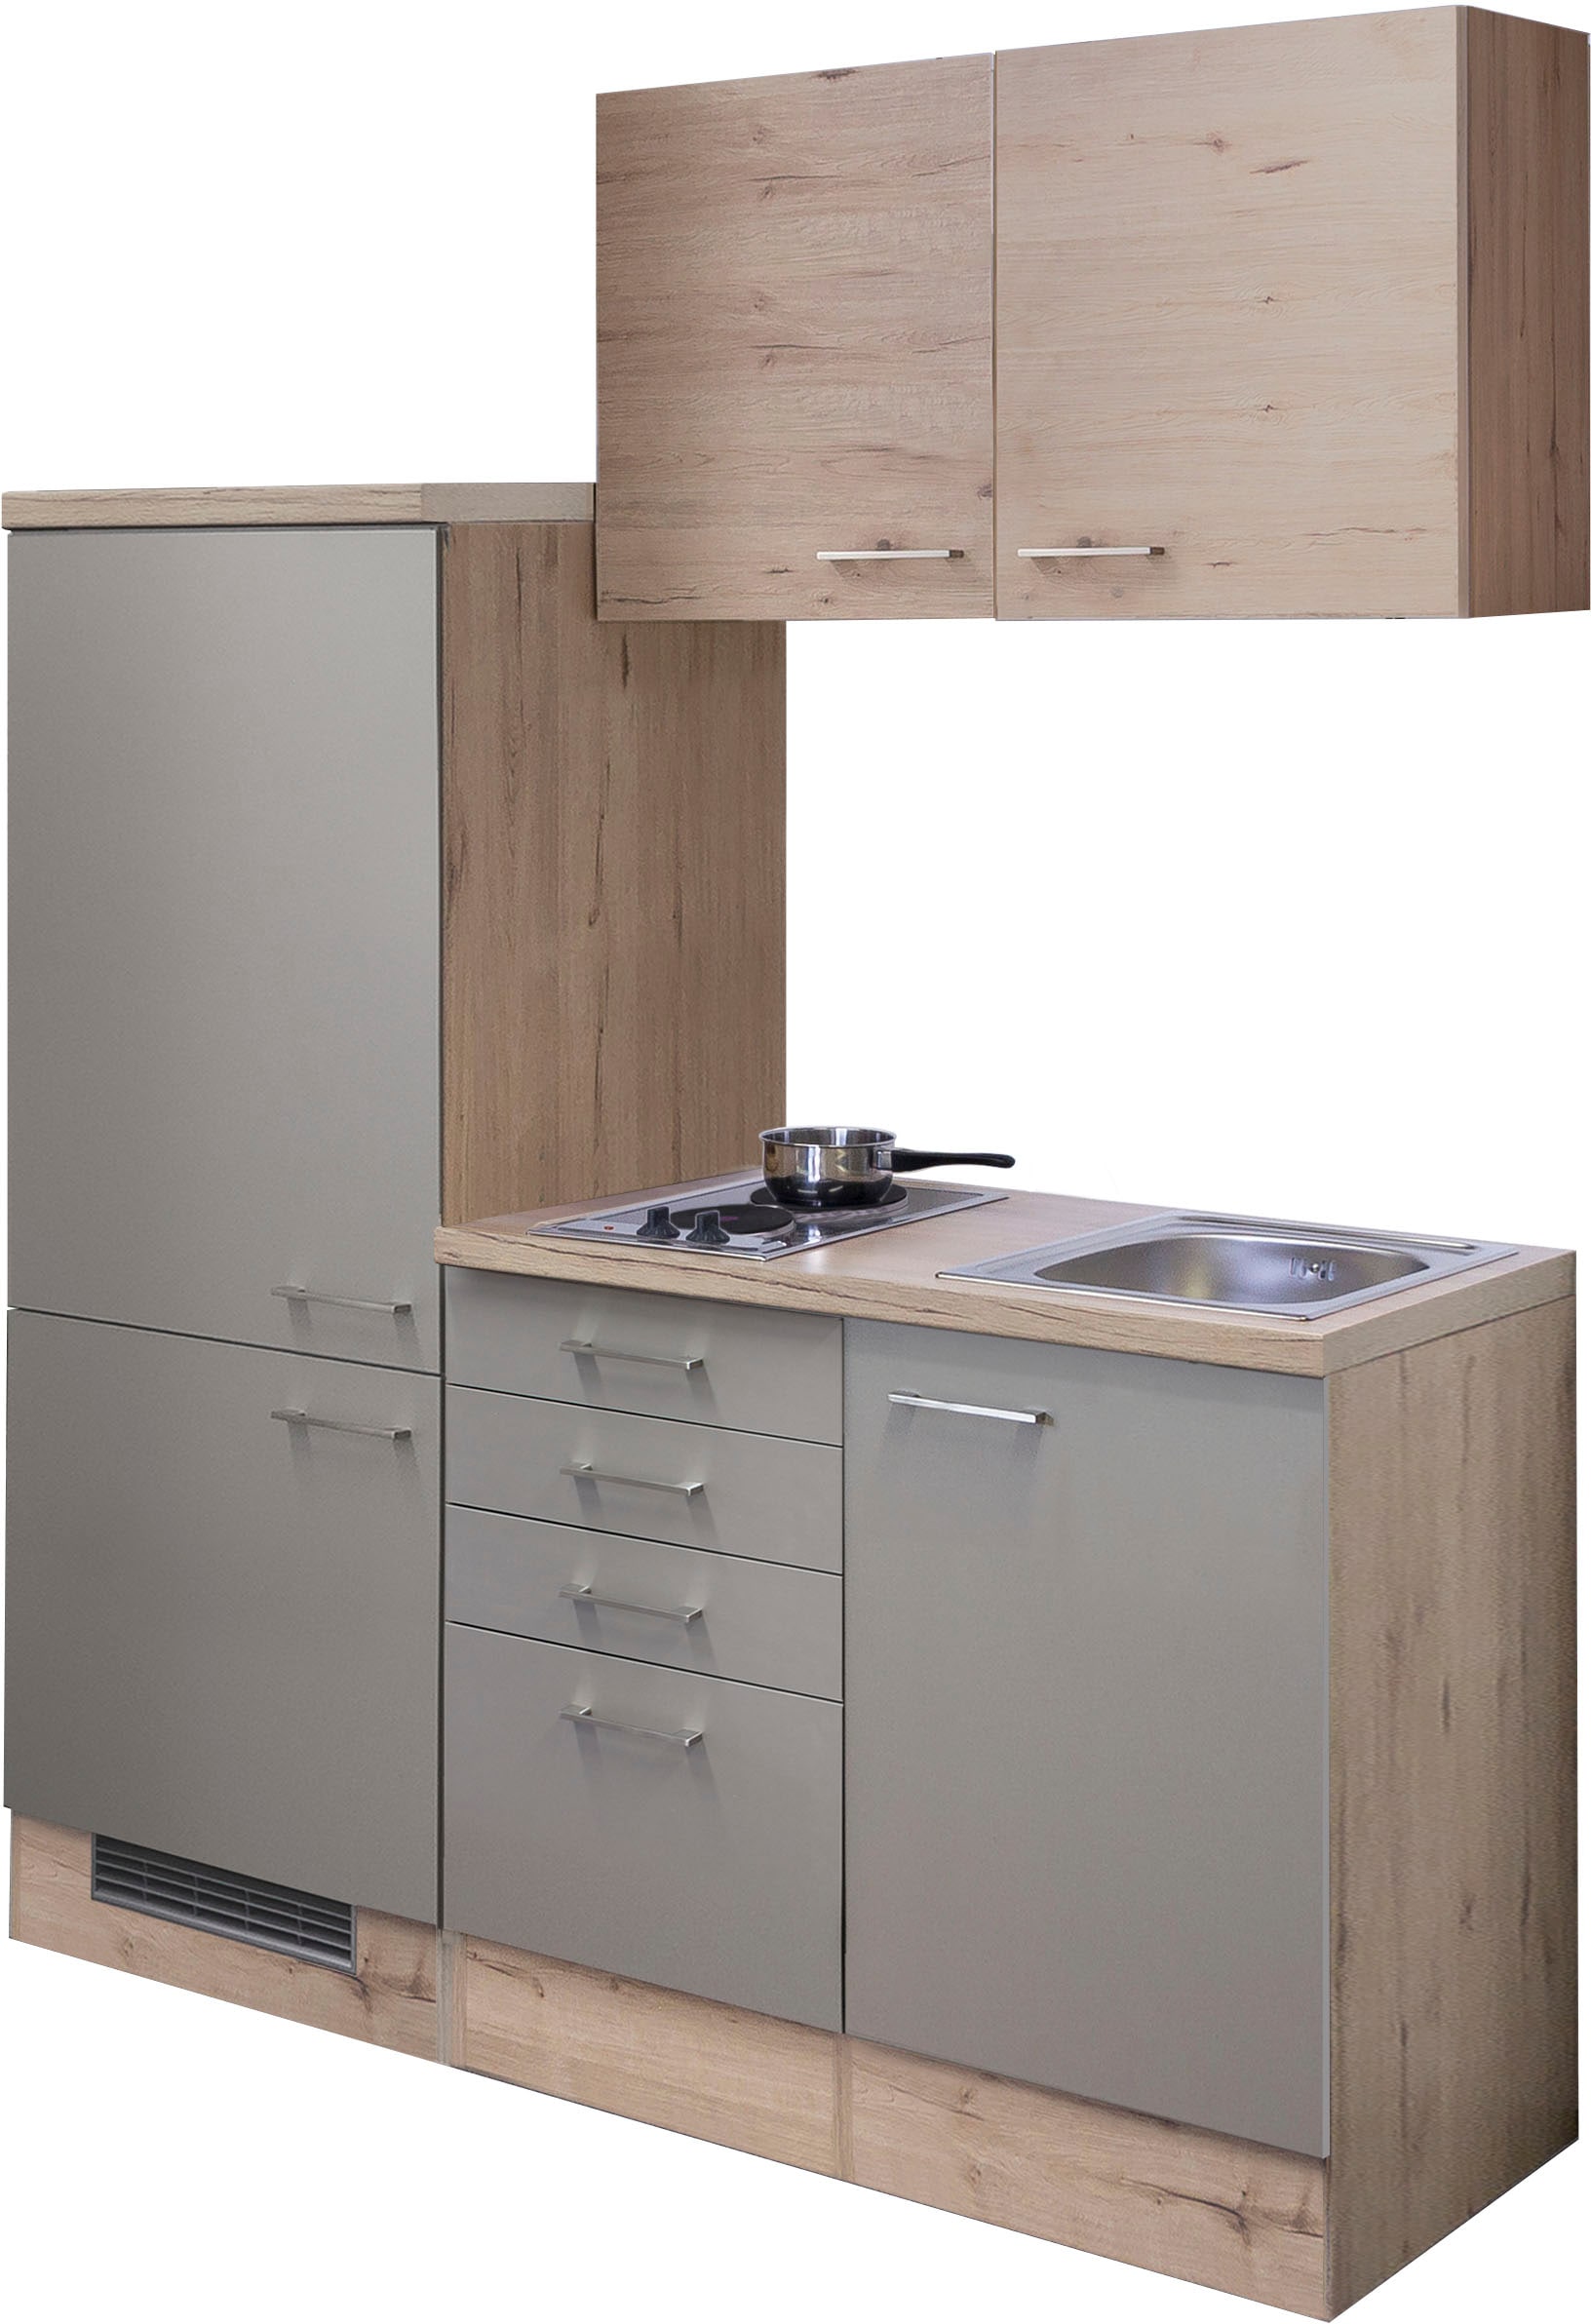 Flex-Well Küche »Riva«, Gesamtbreite 160 cm, mit Einbau-Kühlschrank, Kochfeld und Spüle etc.